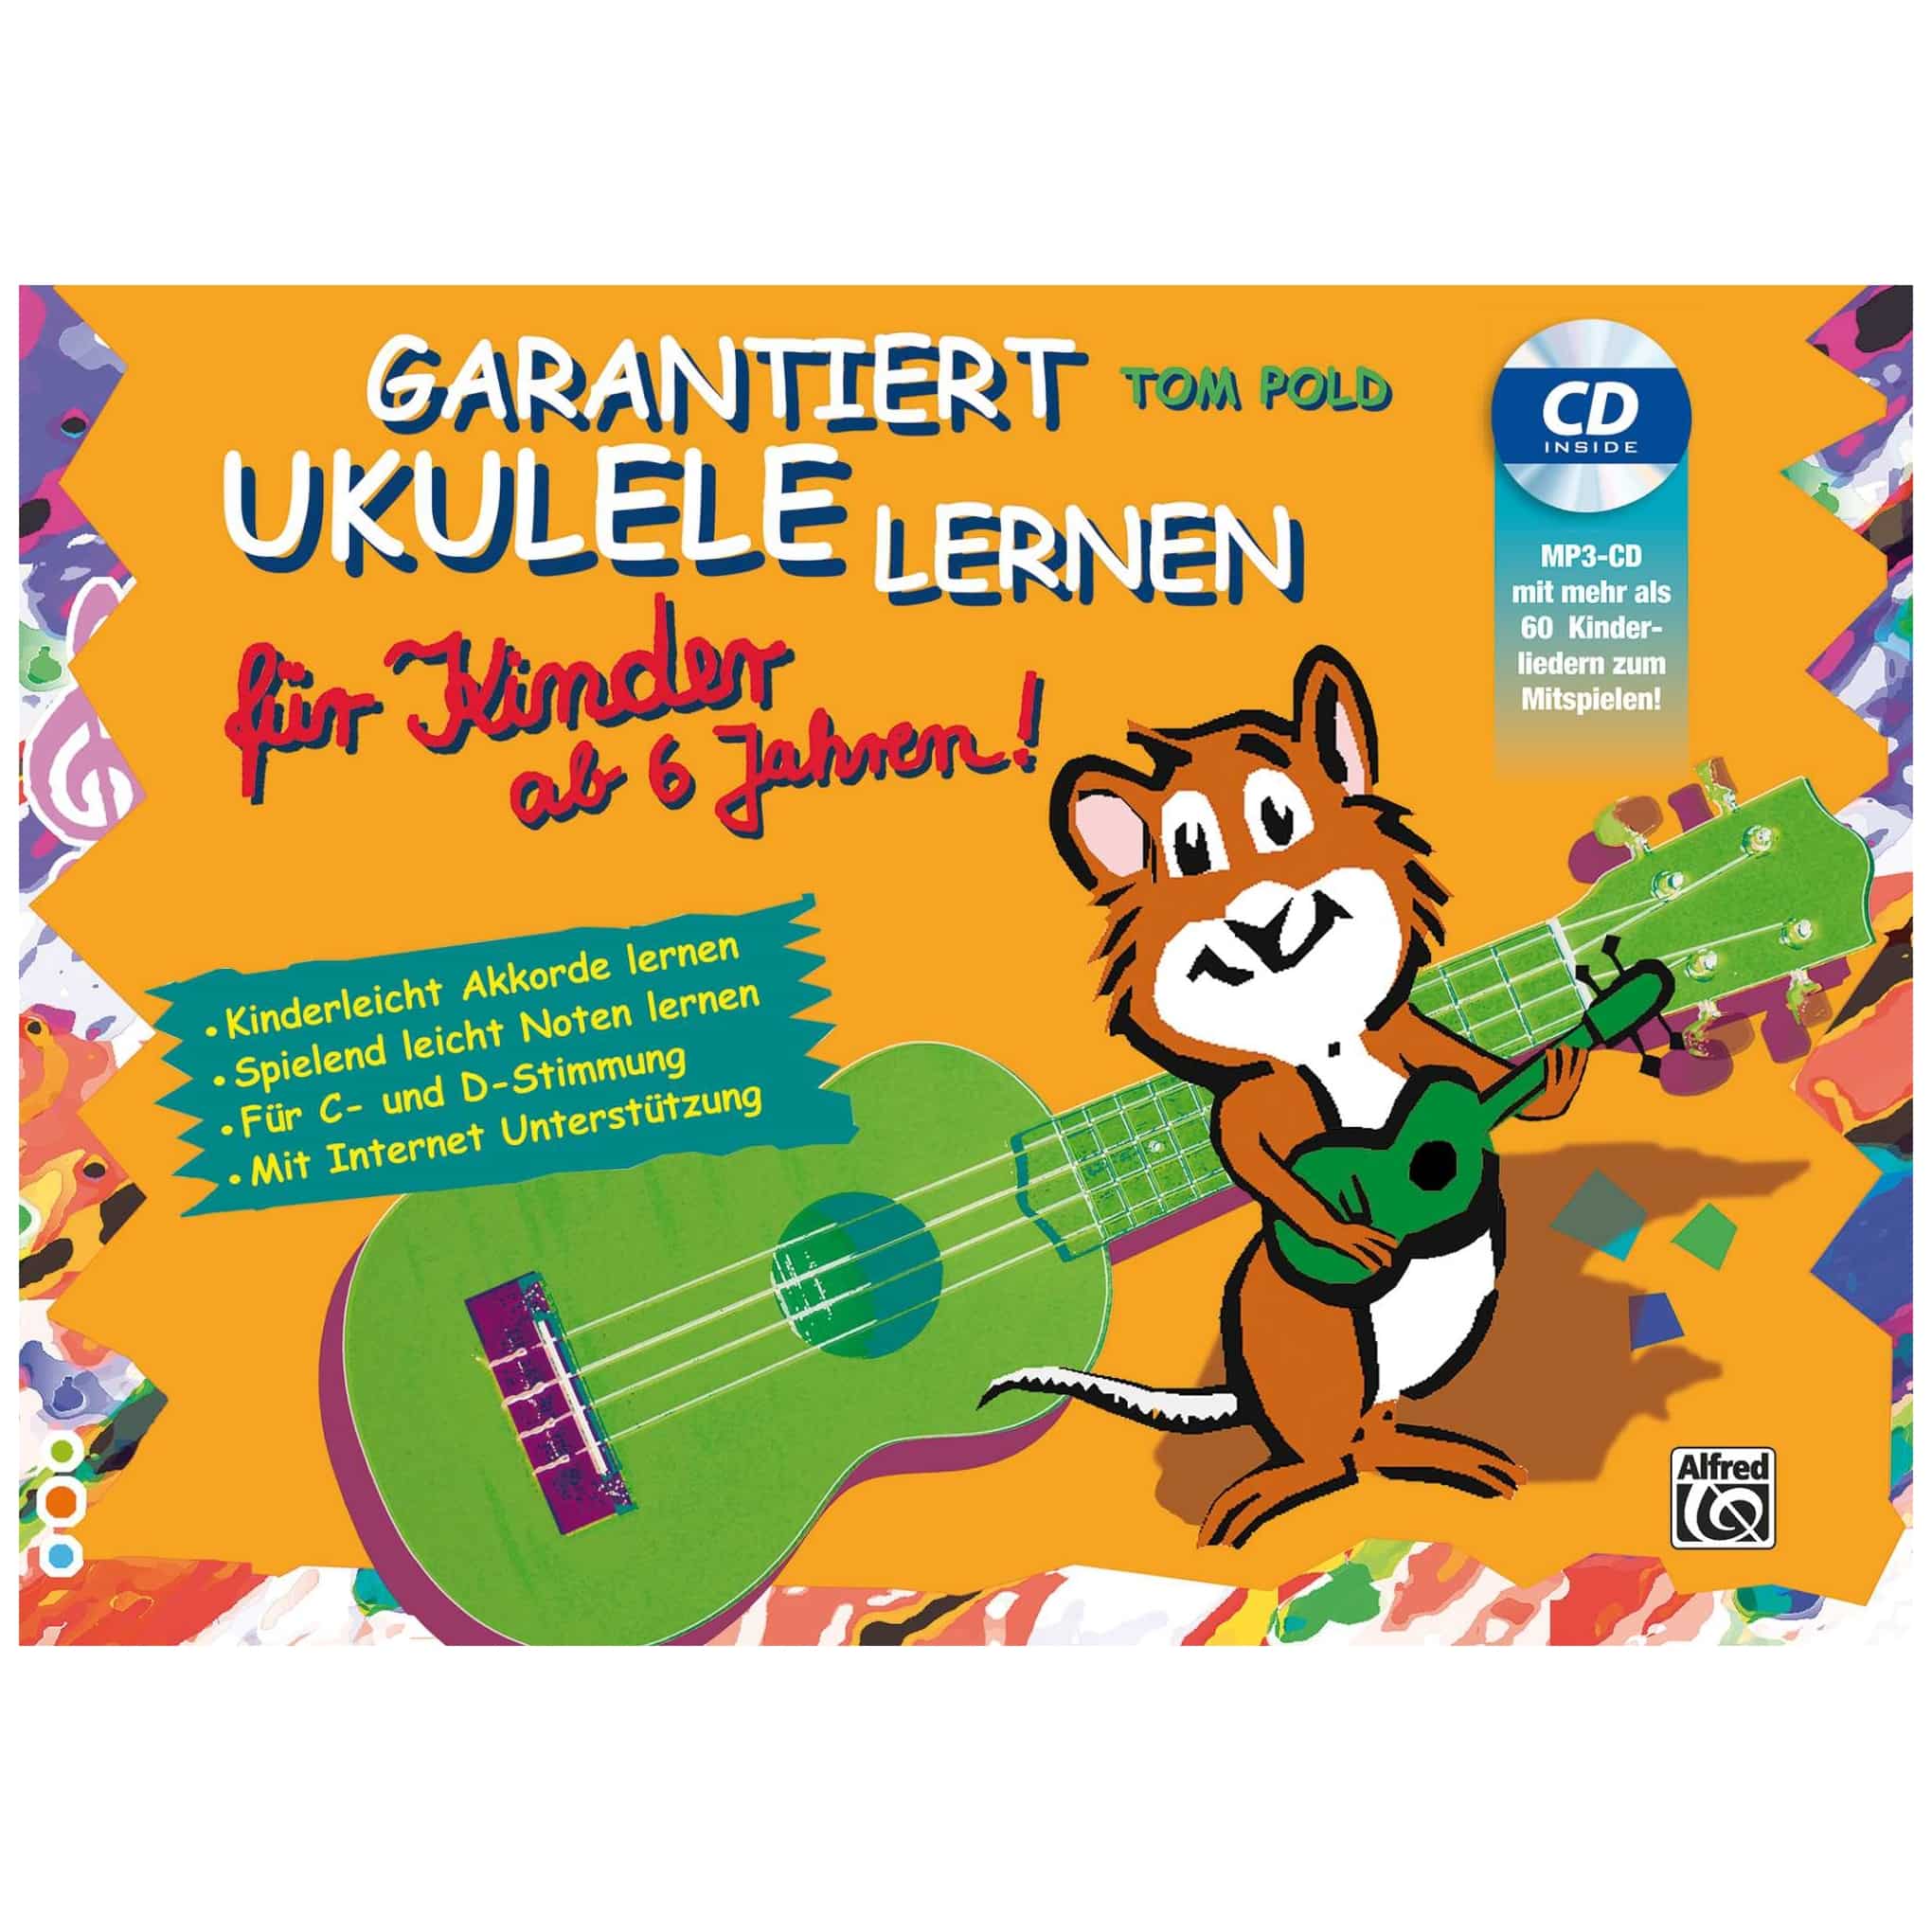 Alfred Music Publishing Tom Pold - Guaranteed ukulele learning for children